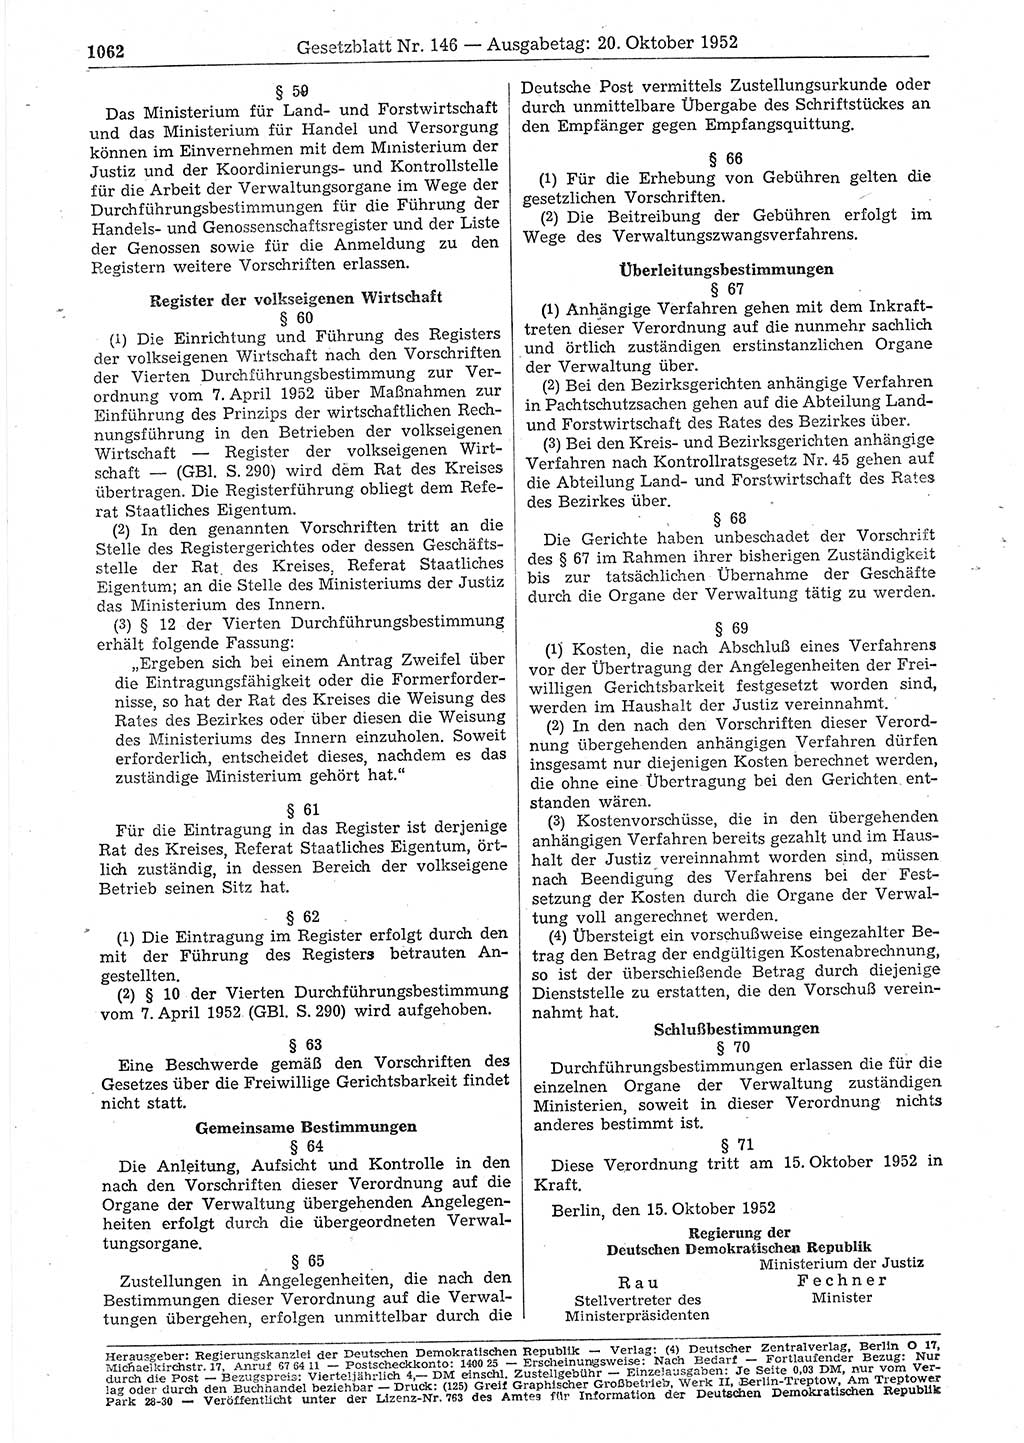 Gesetzblatt (GBl.) der Deutschen Demokratischen Republik (DDR) 1952, Seite 1062 (GBl. DDR 1952, S. 1062)